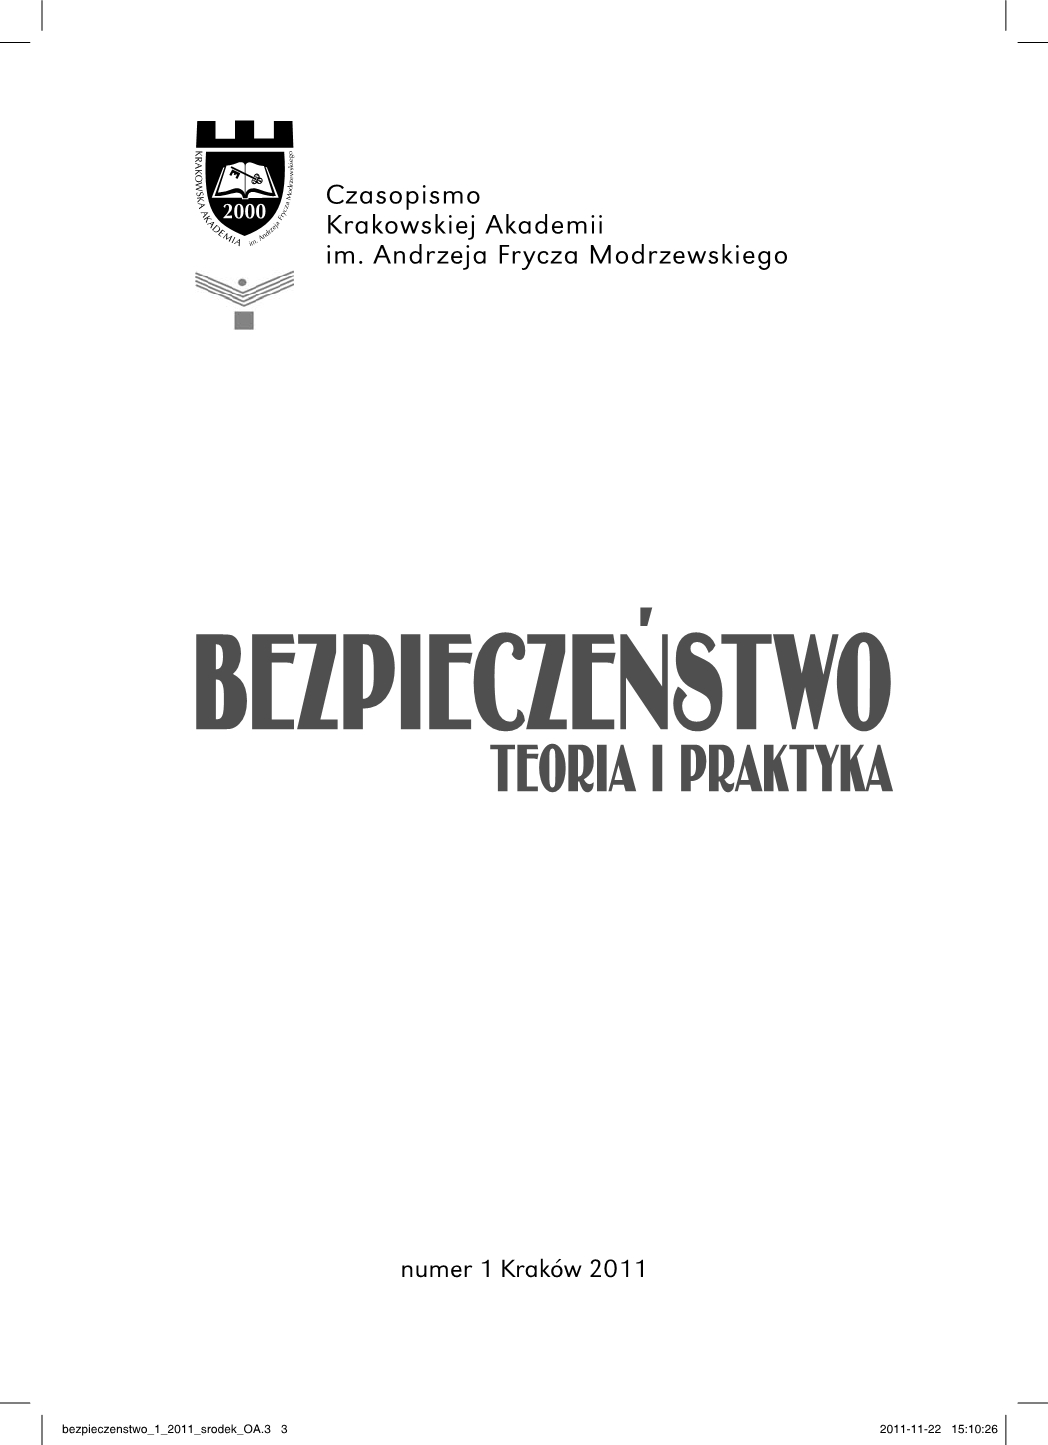 Bezpieczeństwo międzynarodowe. Przegląd aktualnego stanu, pod redakcją Katarzyny Żukrowskiej - book review Cover Image